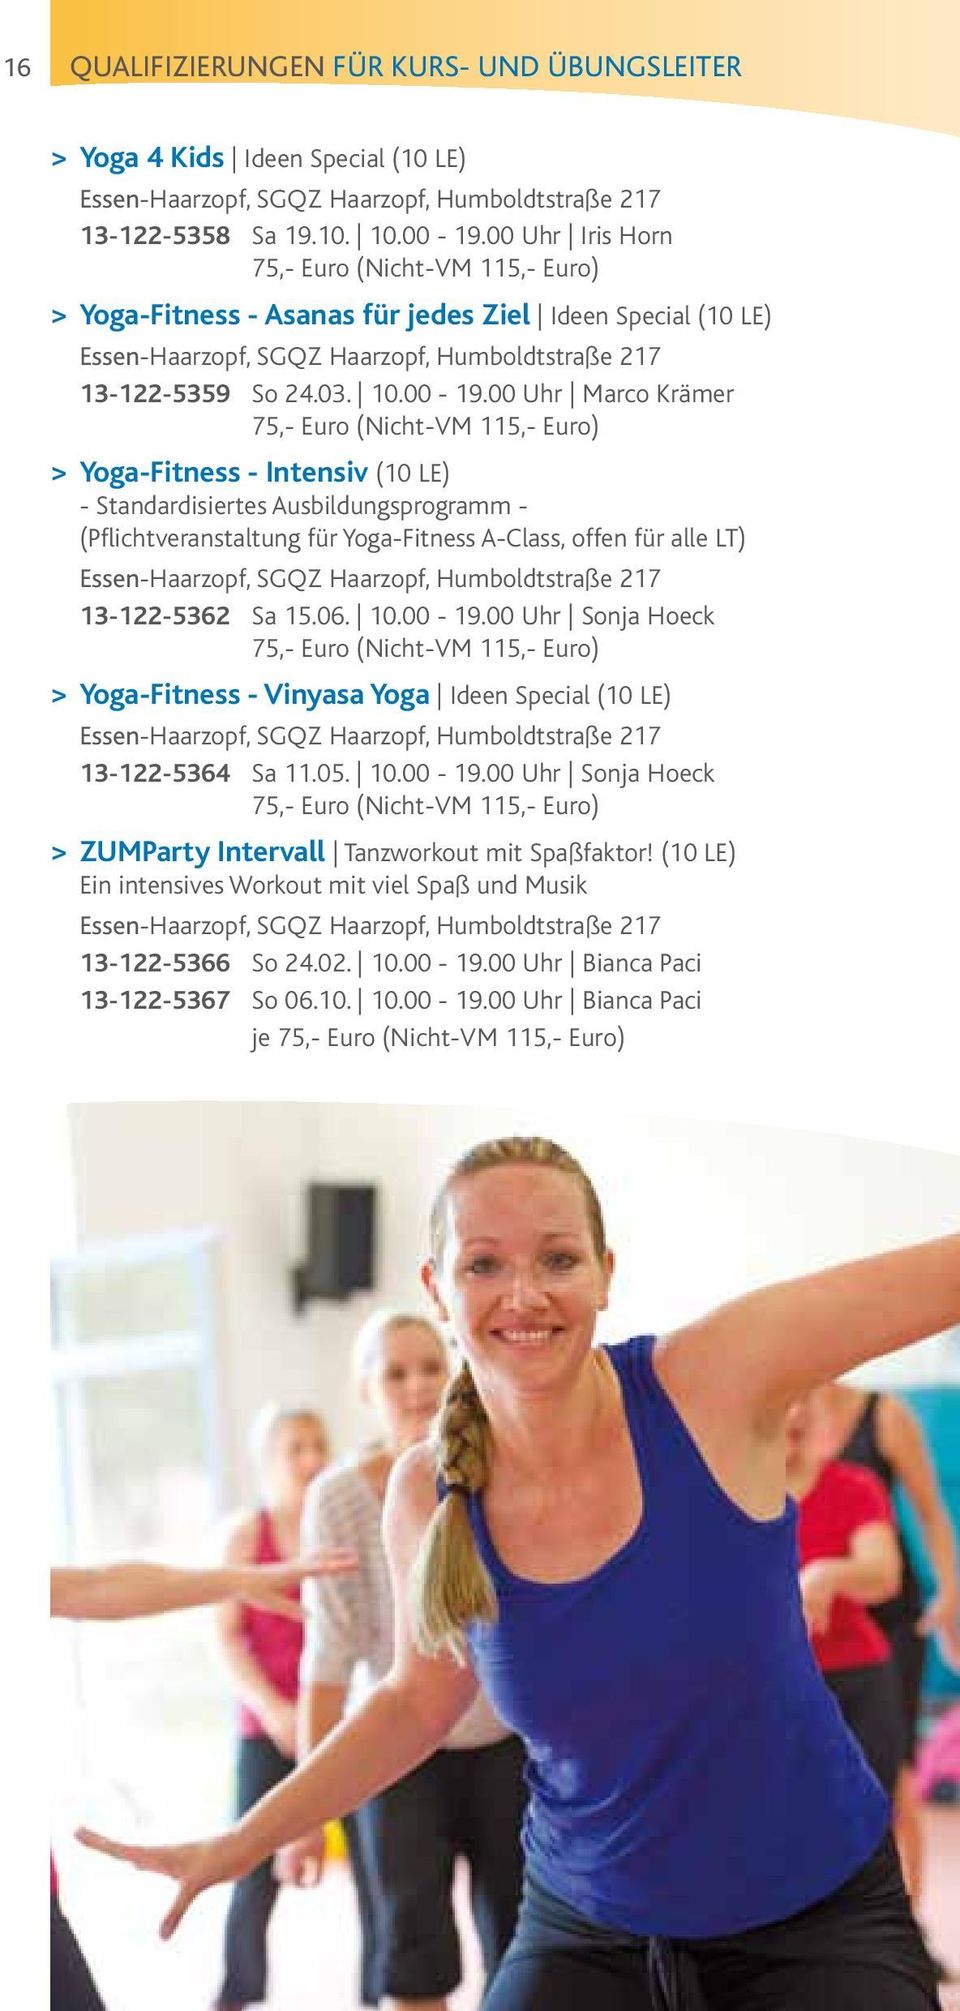 00 Uhr Marco Krämer 75,- Euro (Nicht-VM 115,- Euro) > Yoga-Fitness - Intensiv (10 LE) - Standardisiertes Ausbildungsprogramm - (Pflichtveranstaltung für Yoga-Fitness A-Class, offen für alle LT)